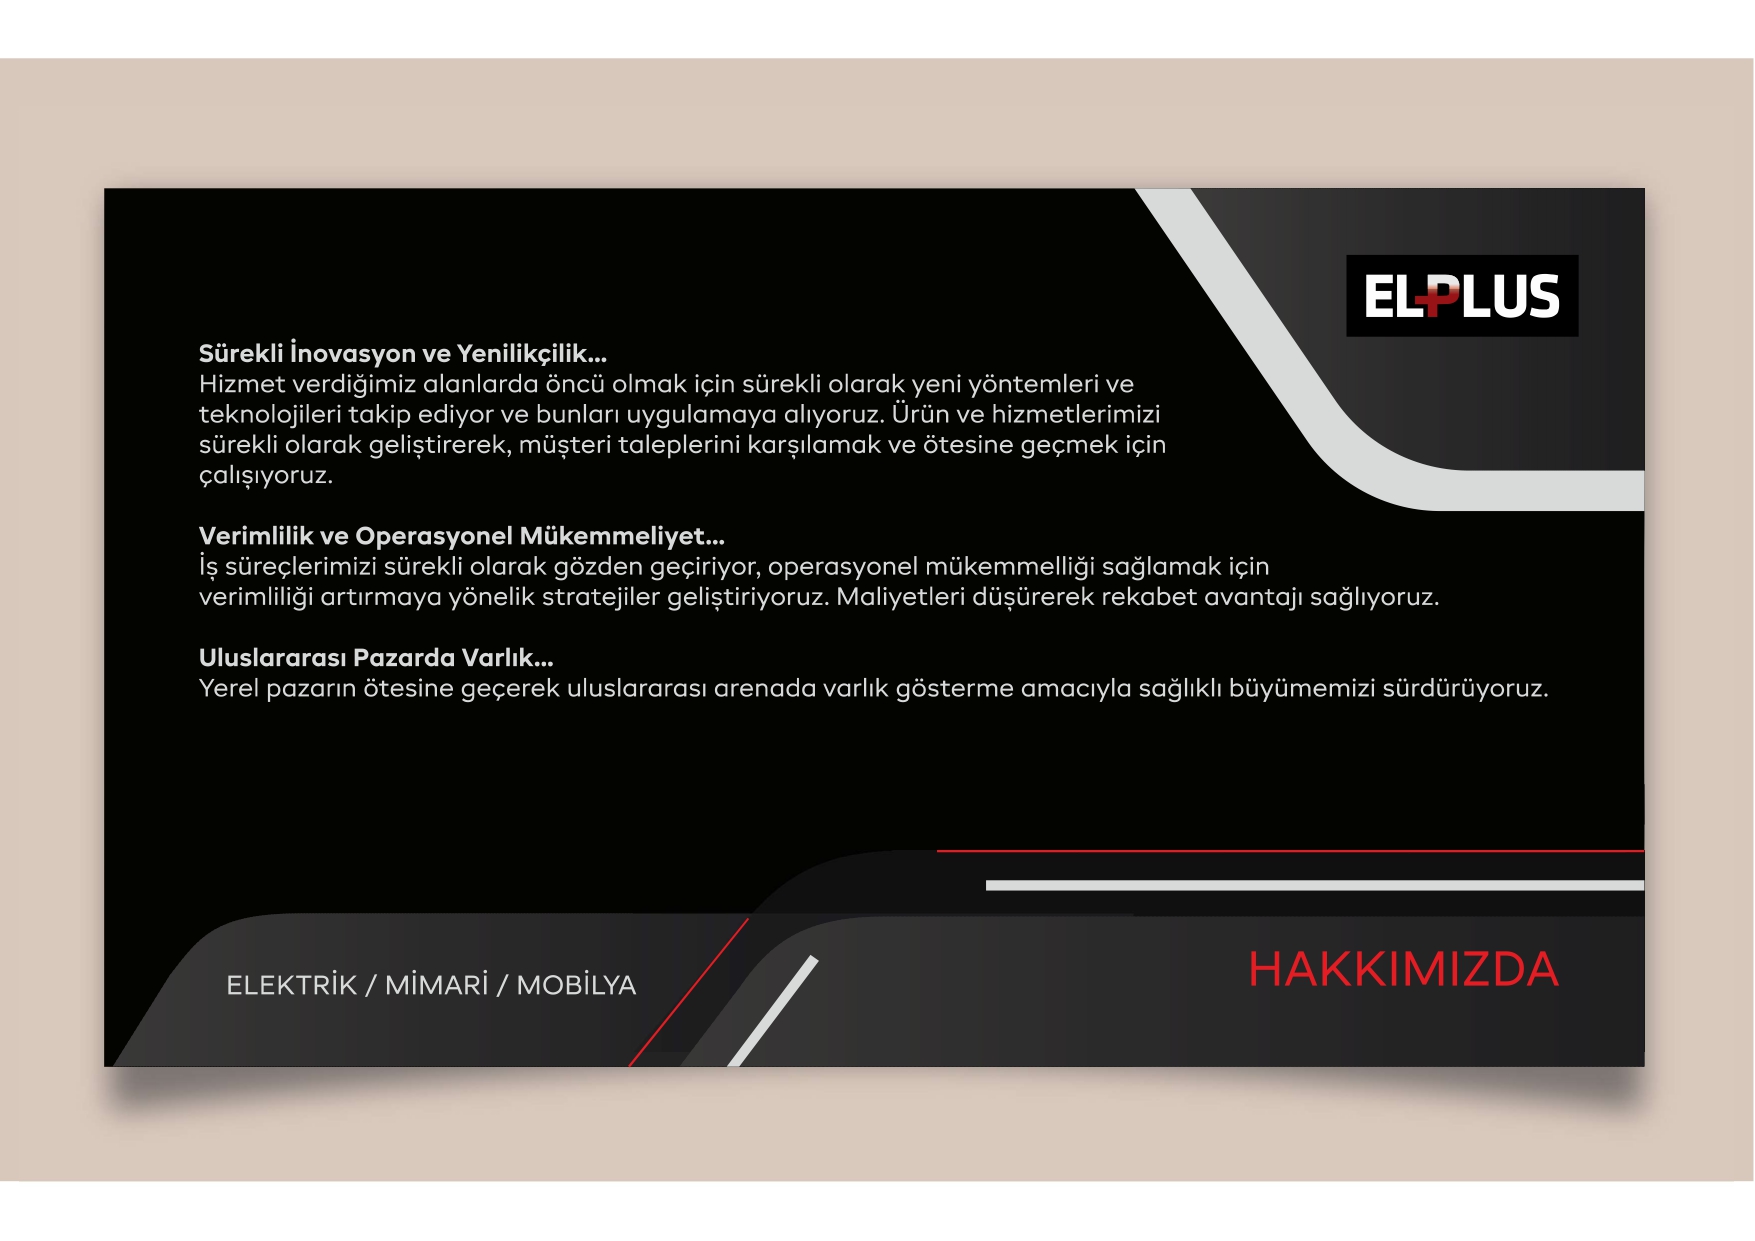 ELPLUS TURKCE_page-0003.jpg (407 KB)